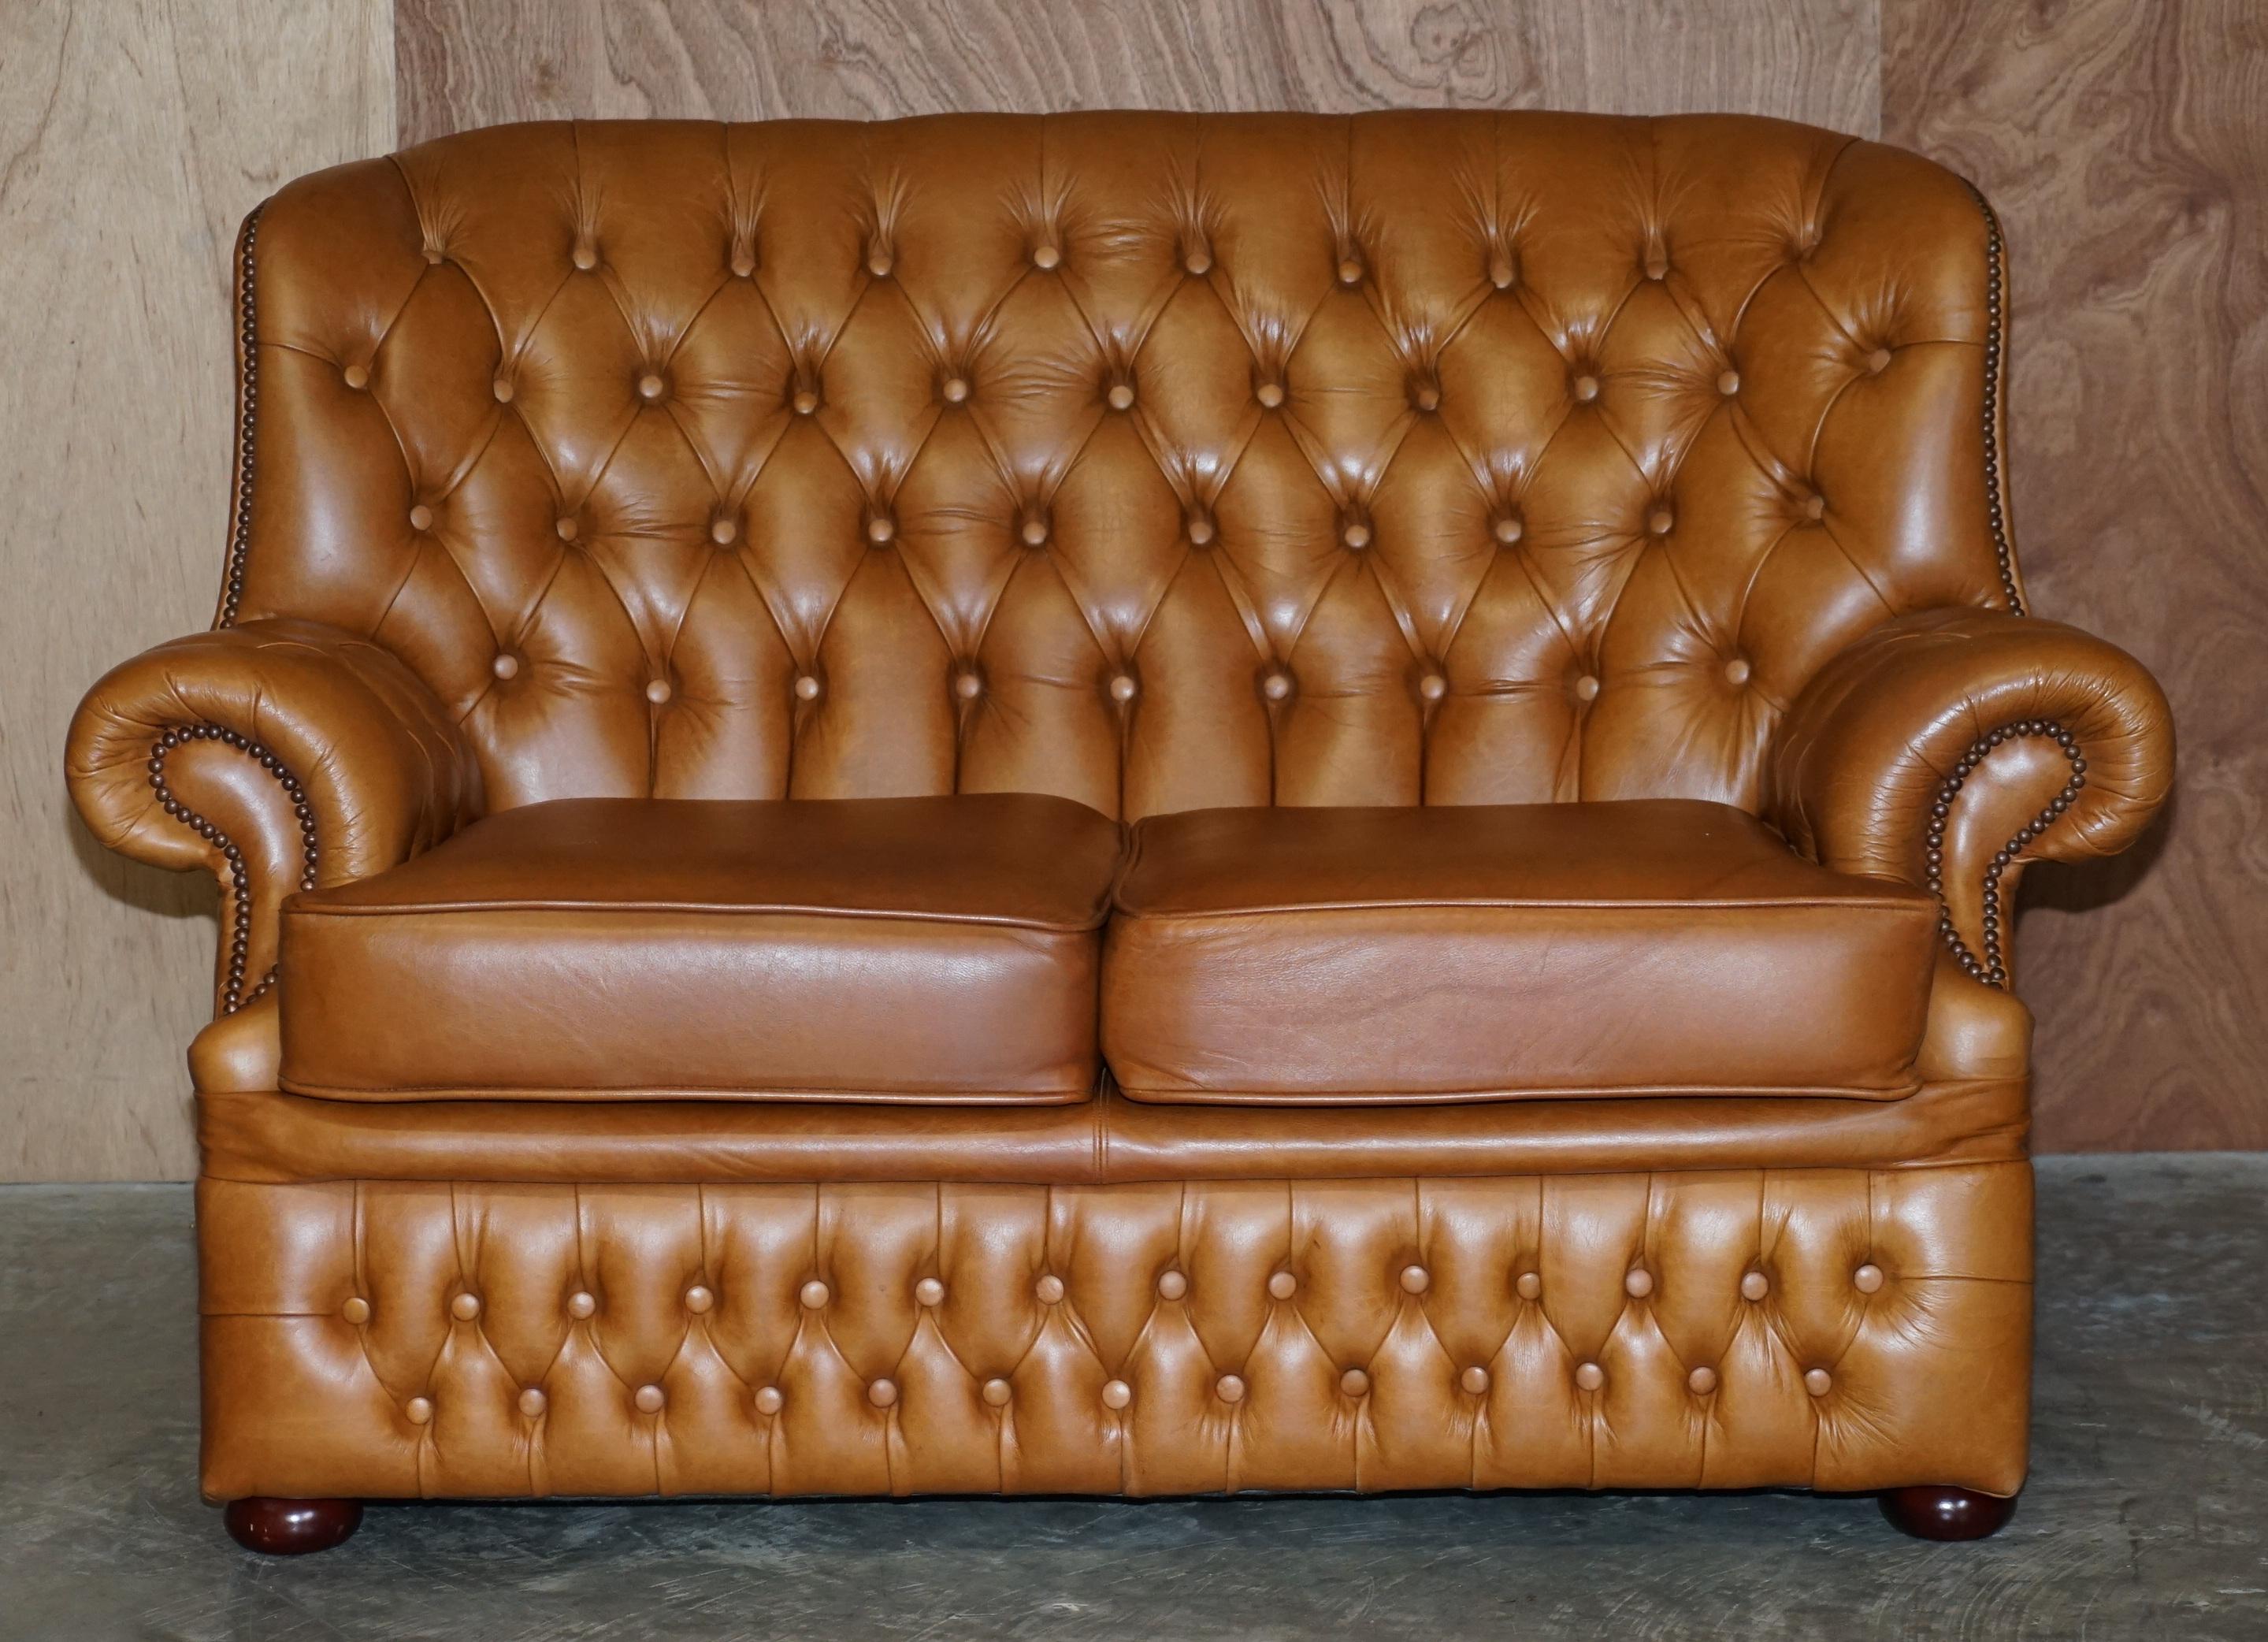 Wir freuen uns, dieses sehr schöne Chesterfield-Sofa aus braunem Leder anbieten zu können.

Dies ist ein sehr bequemes und gut aussehendes Sofa, es hat eine hohe Rückenlehne, so dass Sie Ihren ganzen Rücken einschließlich Kopf ruhen können. Die